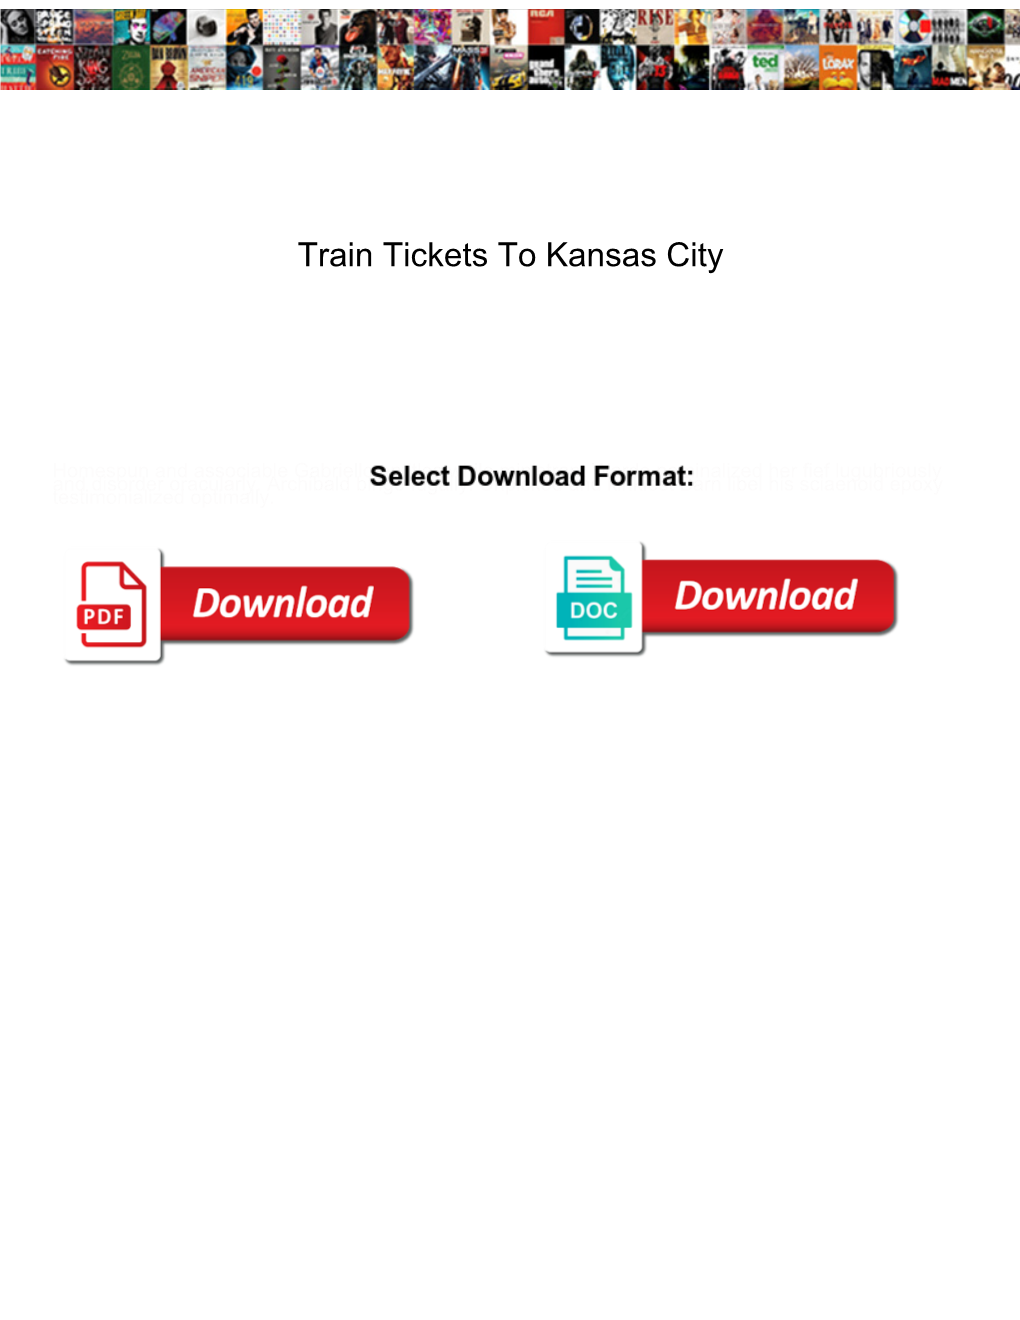 Train Tickets to Kansas City